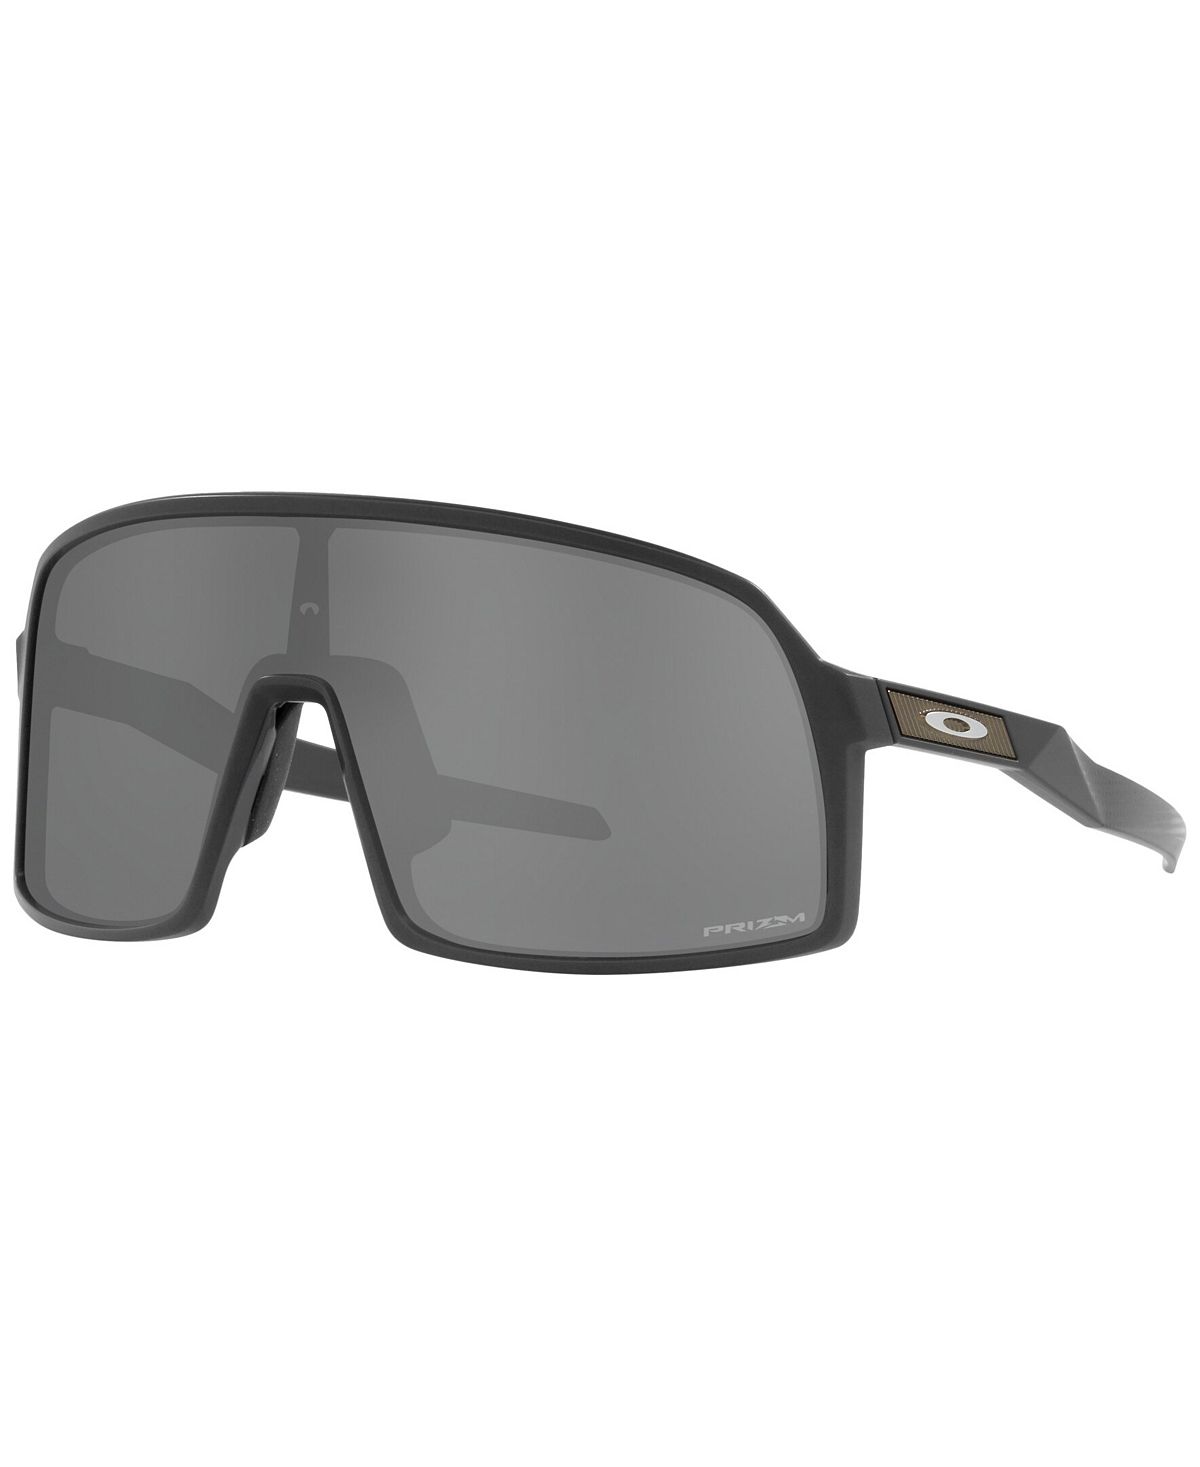 Мужские солнцезащитные очки, коллекция oo9462 sutro s high resolution Oakley, мульти